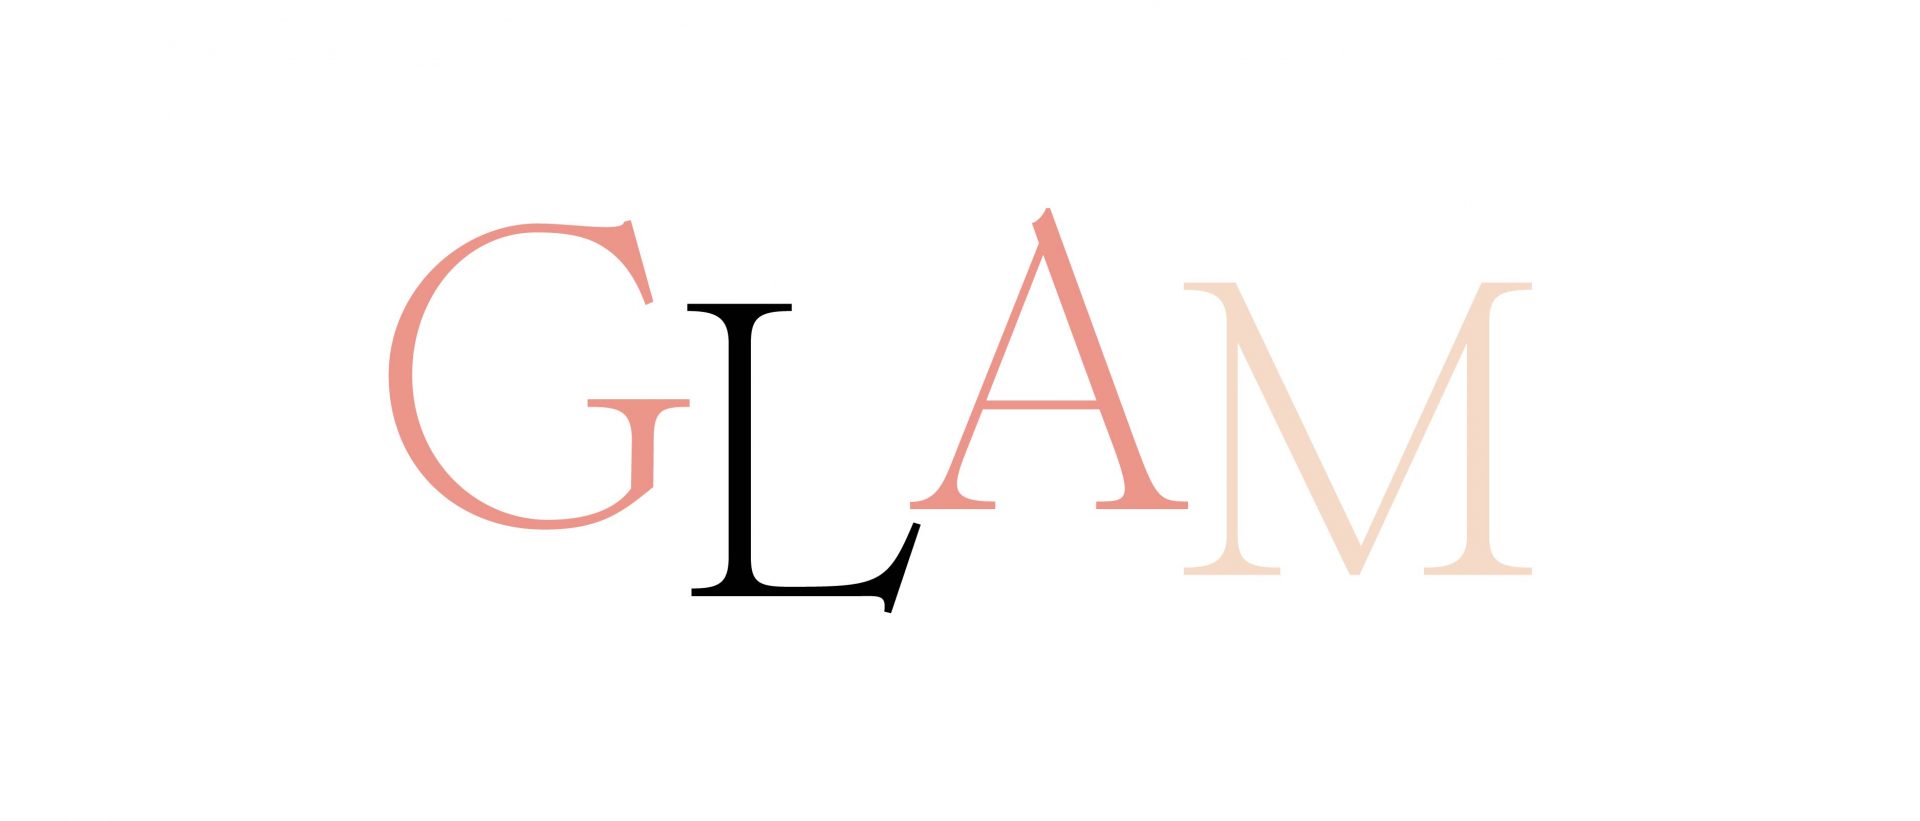 Cos’è lo stile glam?